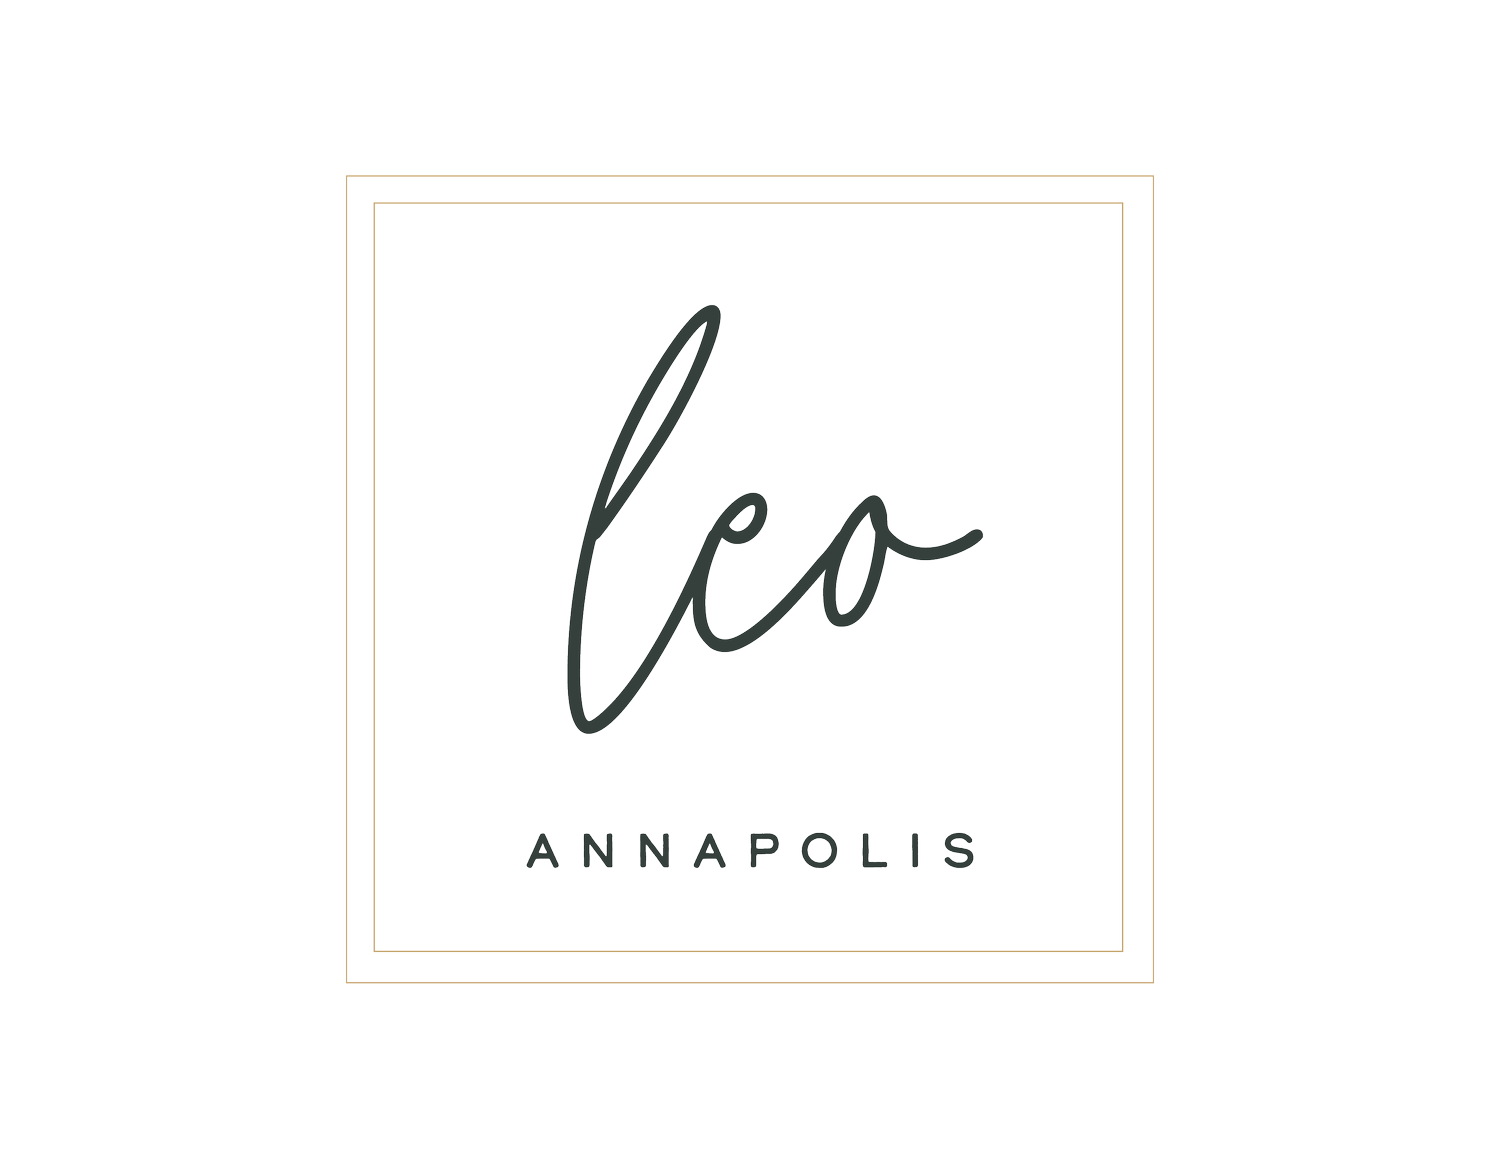 leo-annapolis-logos-no-lion-01.png